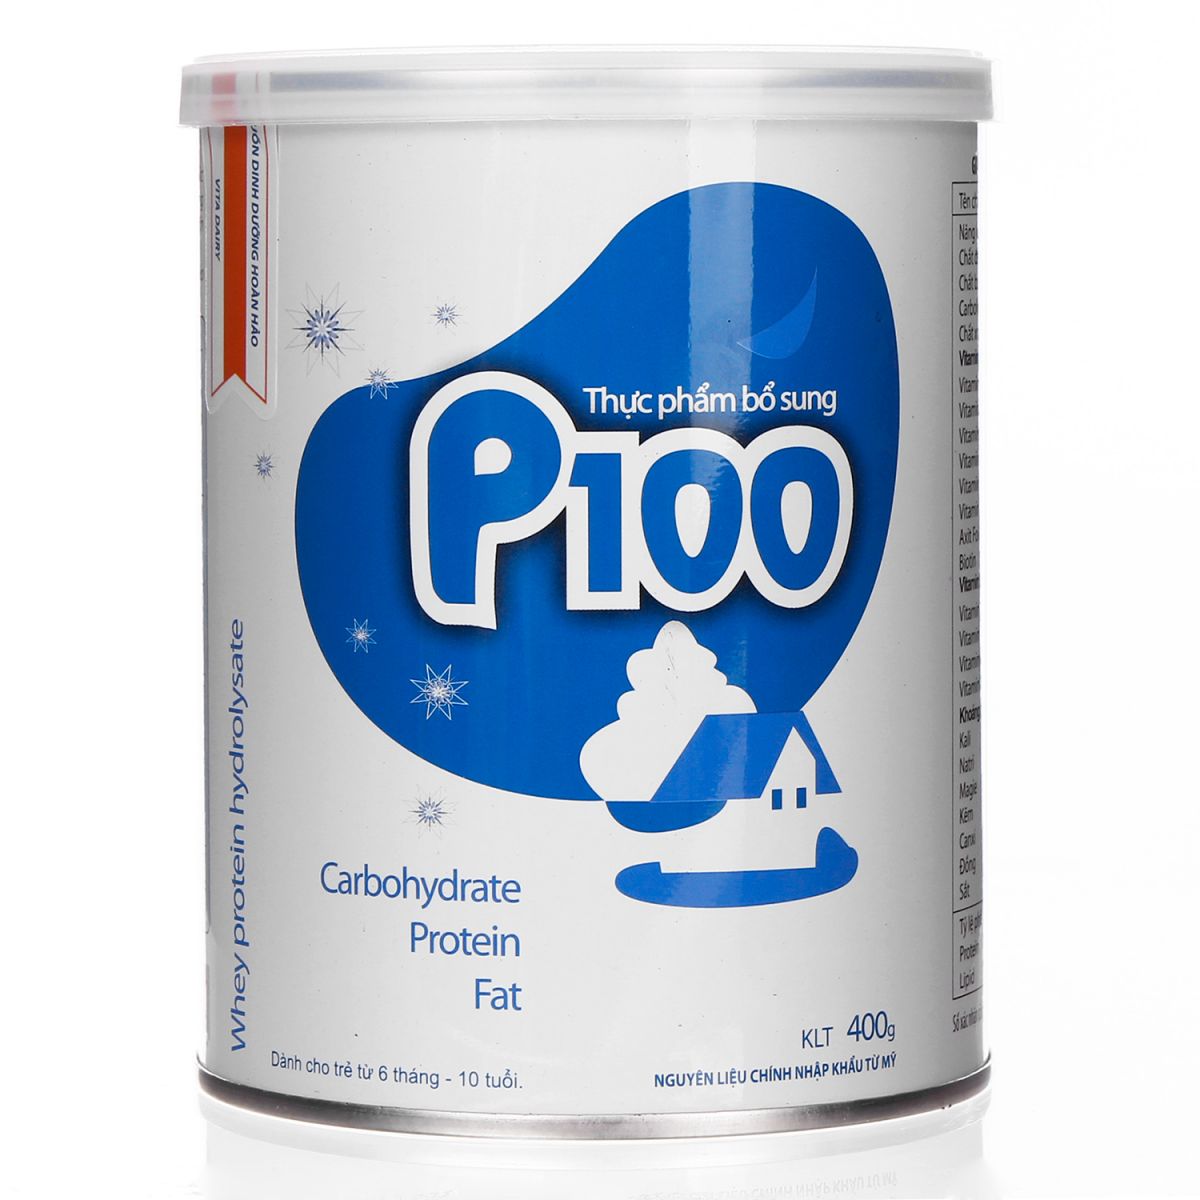 Giới thiệu về các thành phần dinh dưỡng của sữa p100